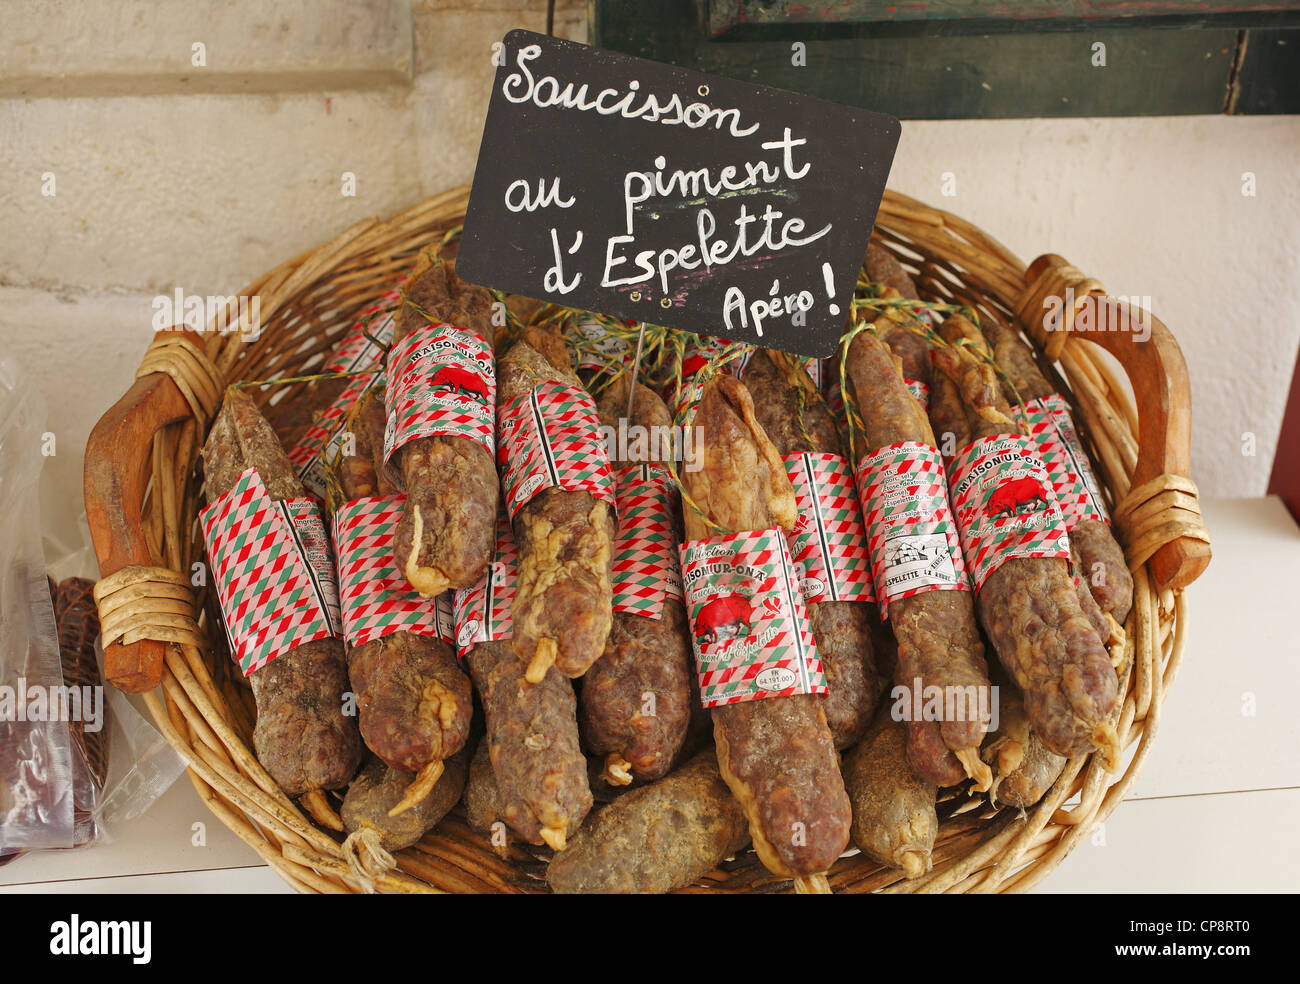 Le Français saucisses sèches (Saucisson), sélection de magasin à Espelette, France Banque D'Images